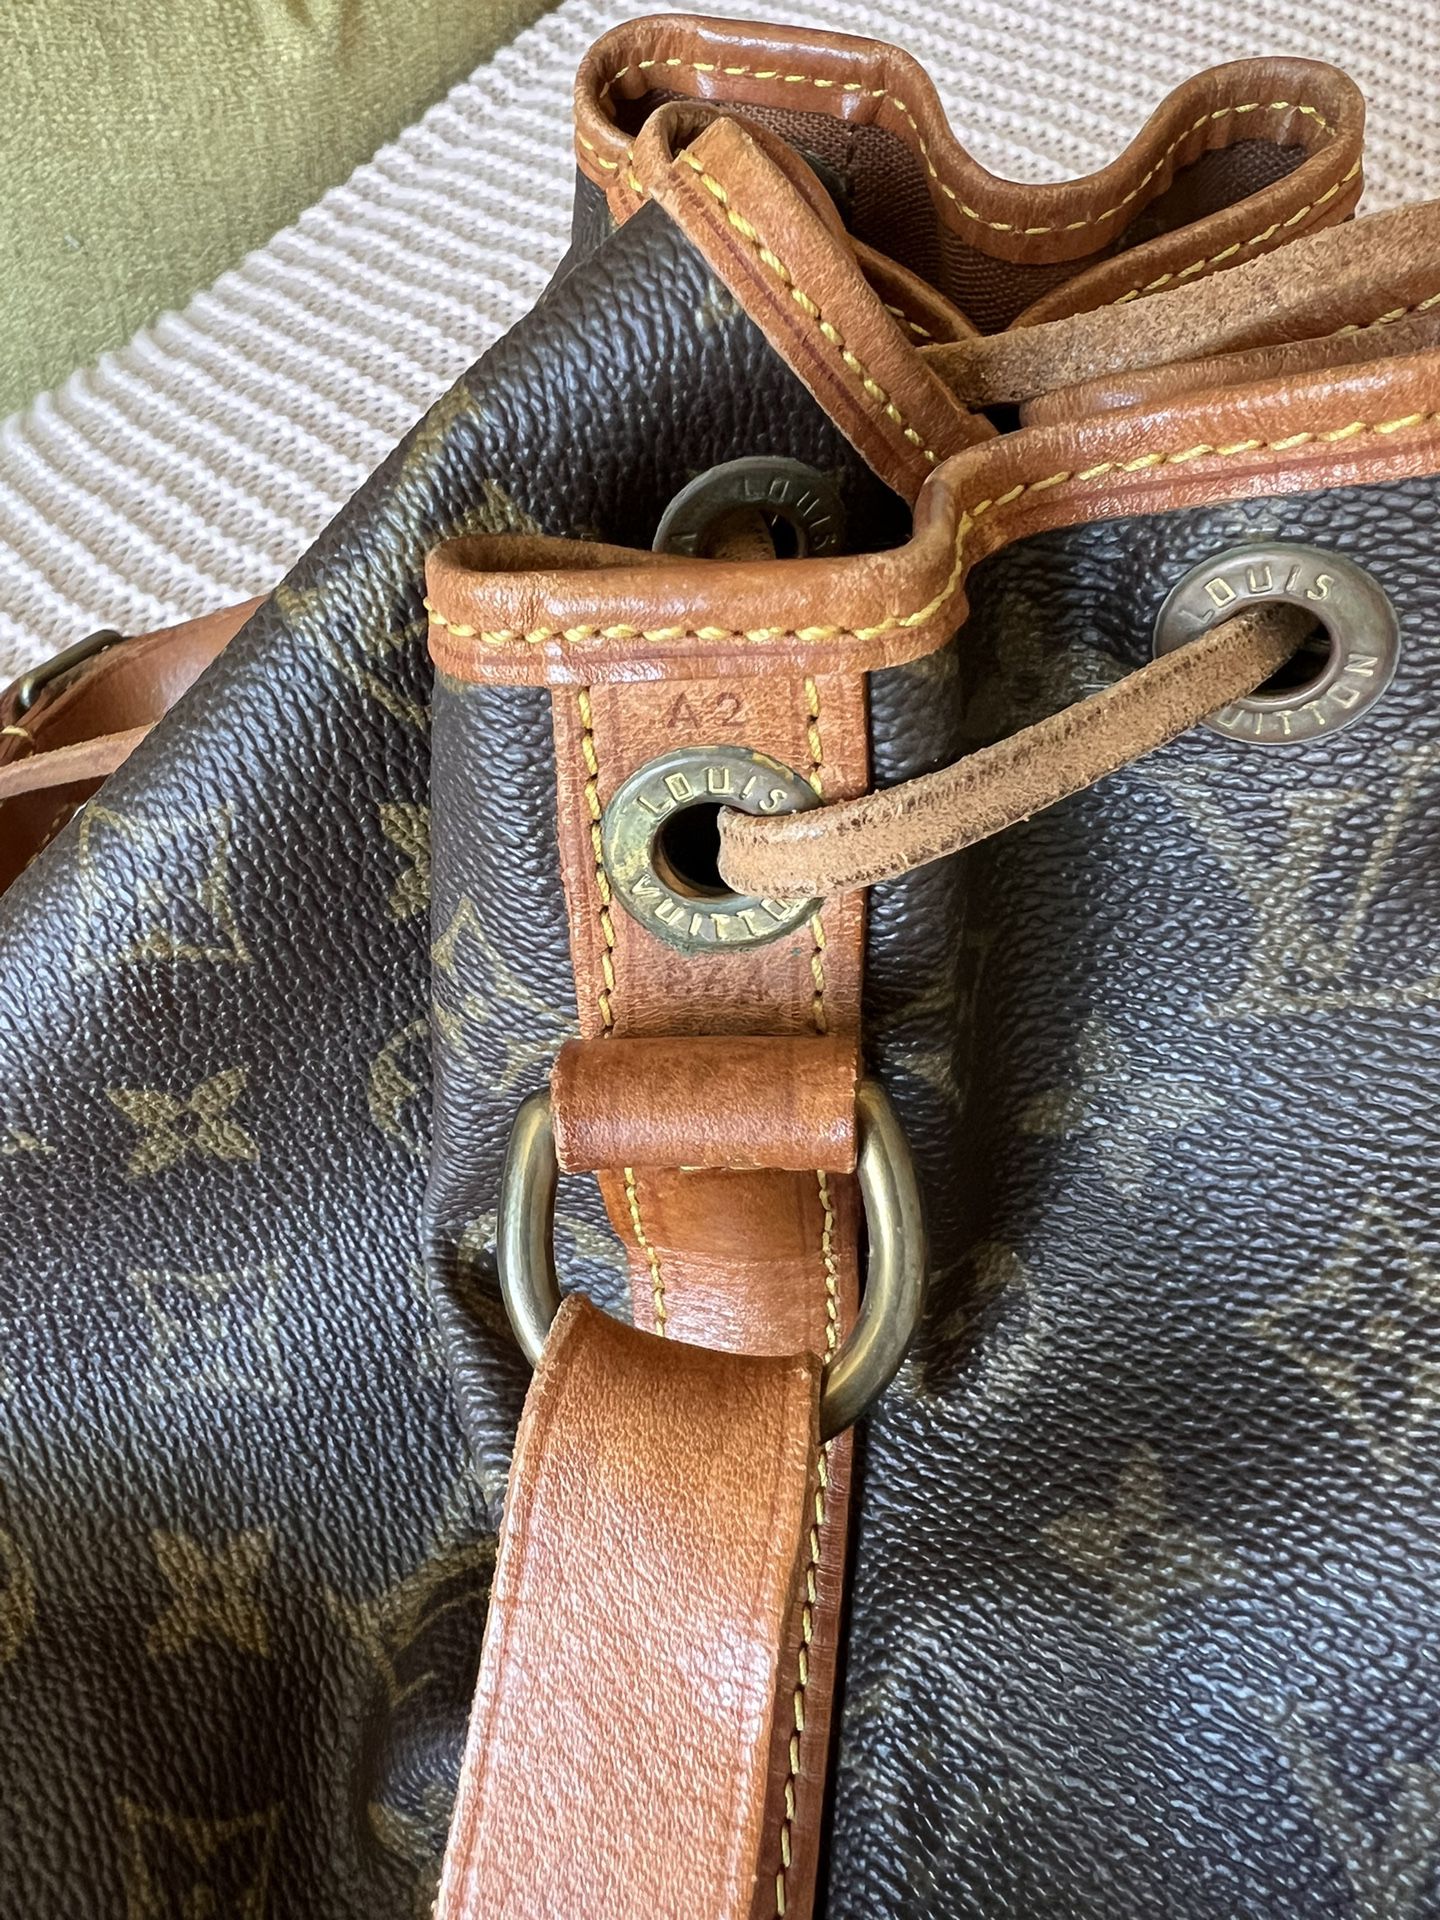 Authentic Louis Vuitton Petite Noe shoulder Bag for Sale in Del Mar, CA -  OfferUp